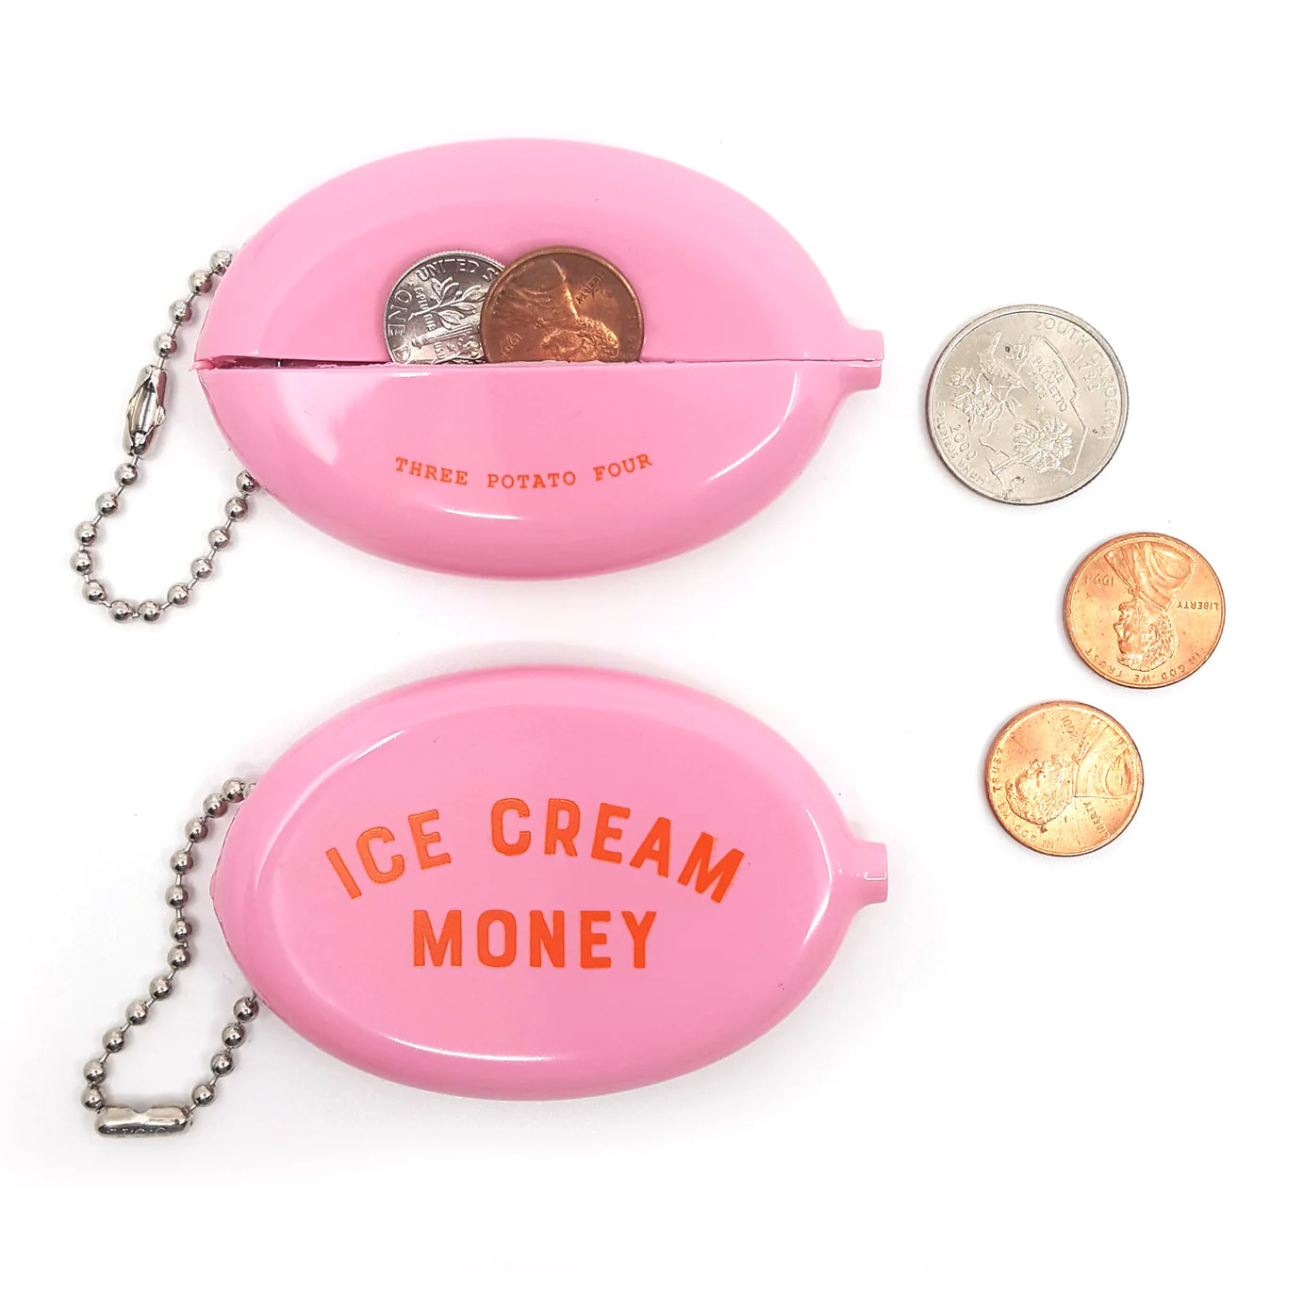 Coin Pouch Ice Cream Money